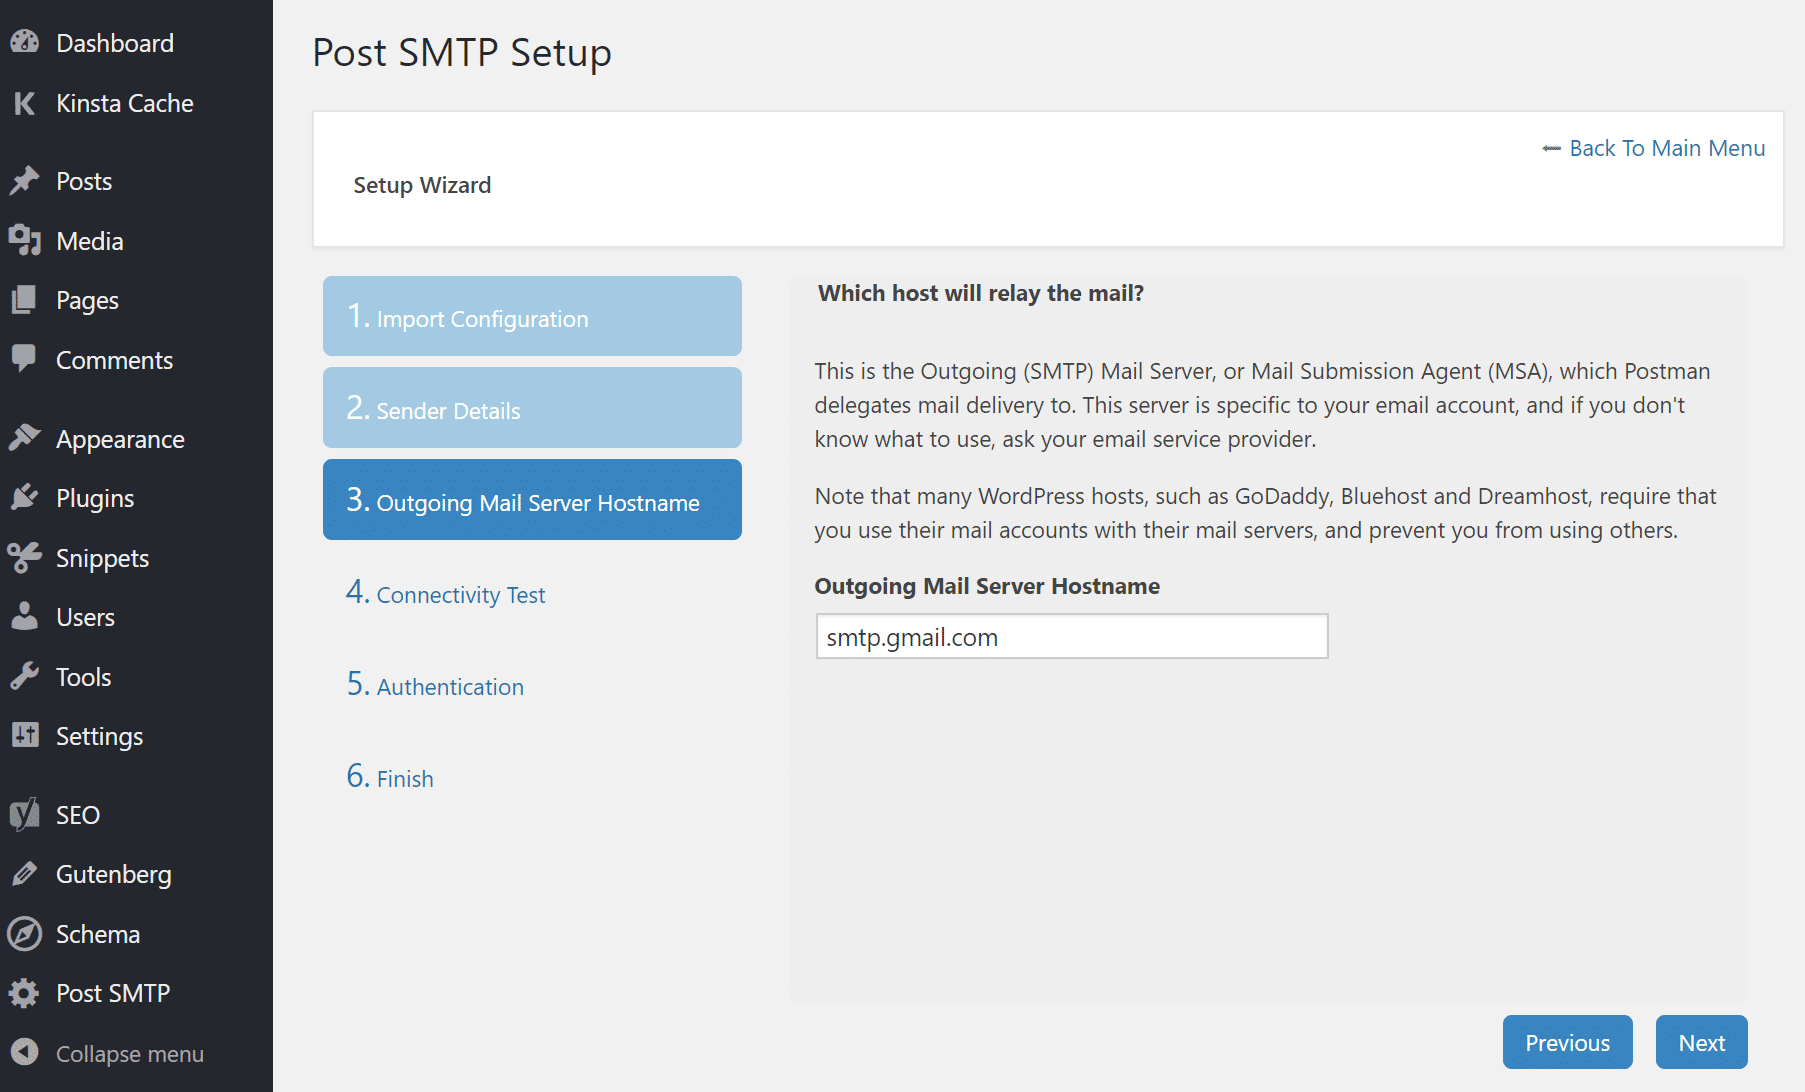 Gib den Hostnamen des ausgehenden SMTP-Mail-Servers ein